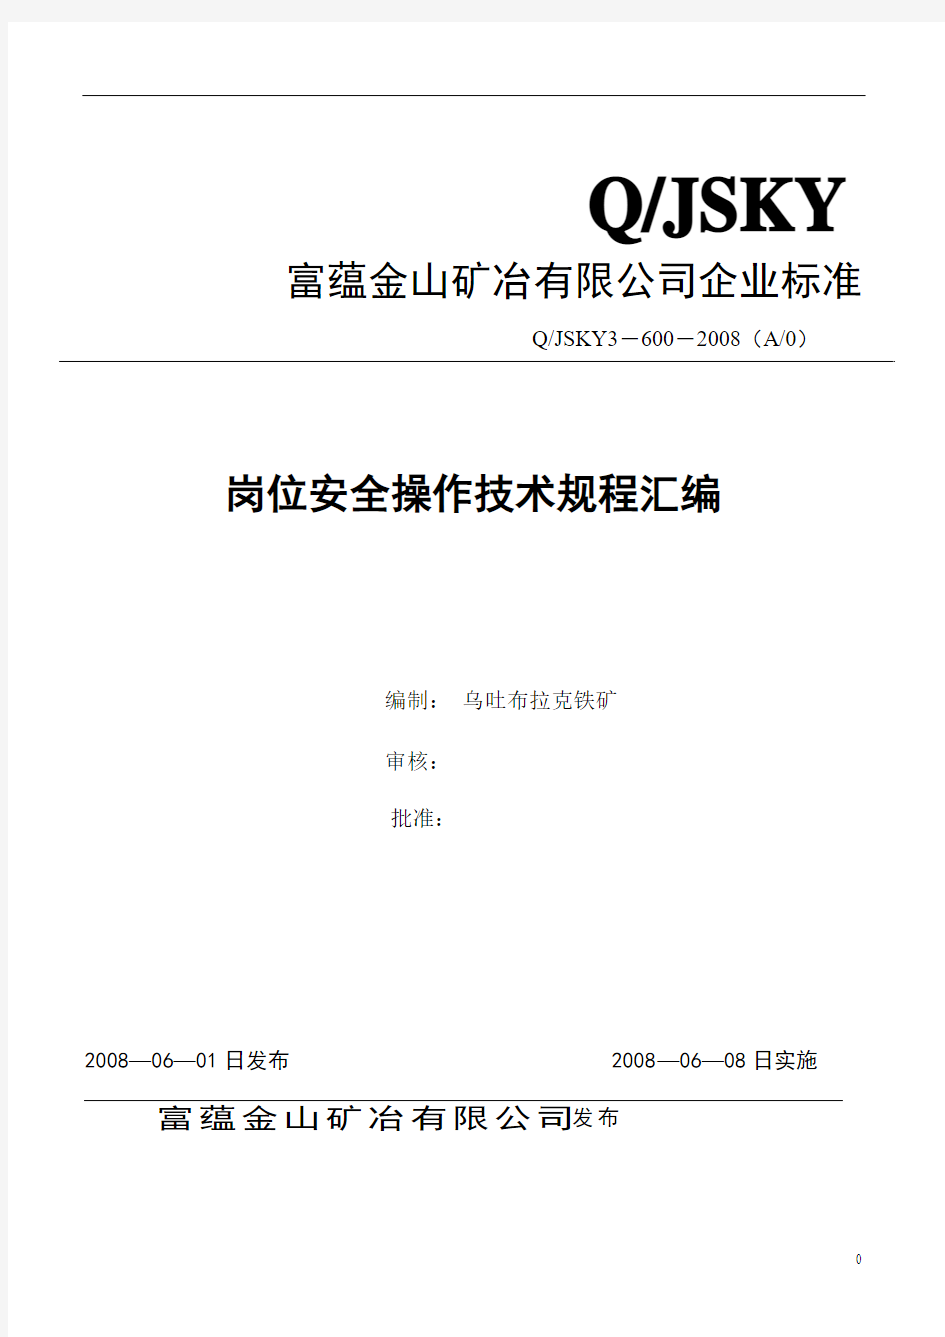 JSKY3-600乌吐布拉克铁矿安全技术操作规程